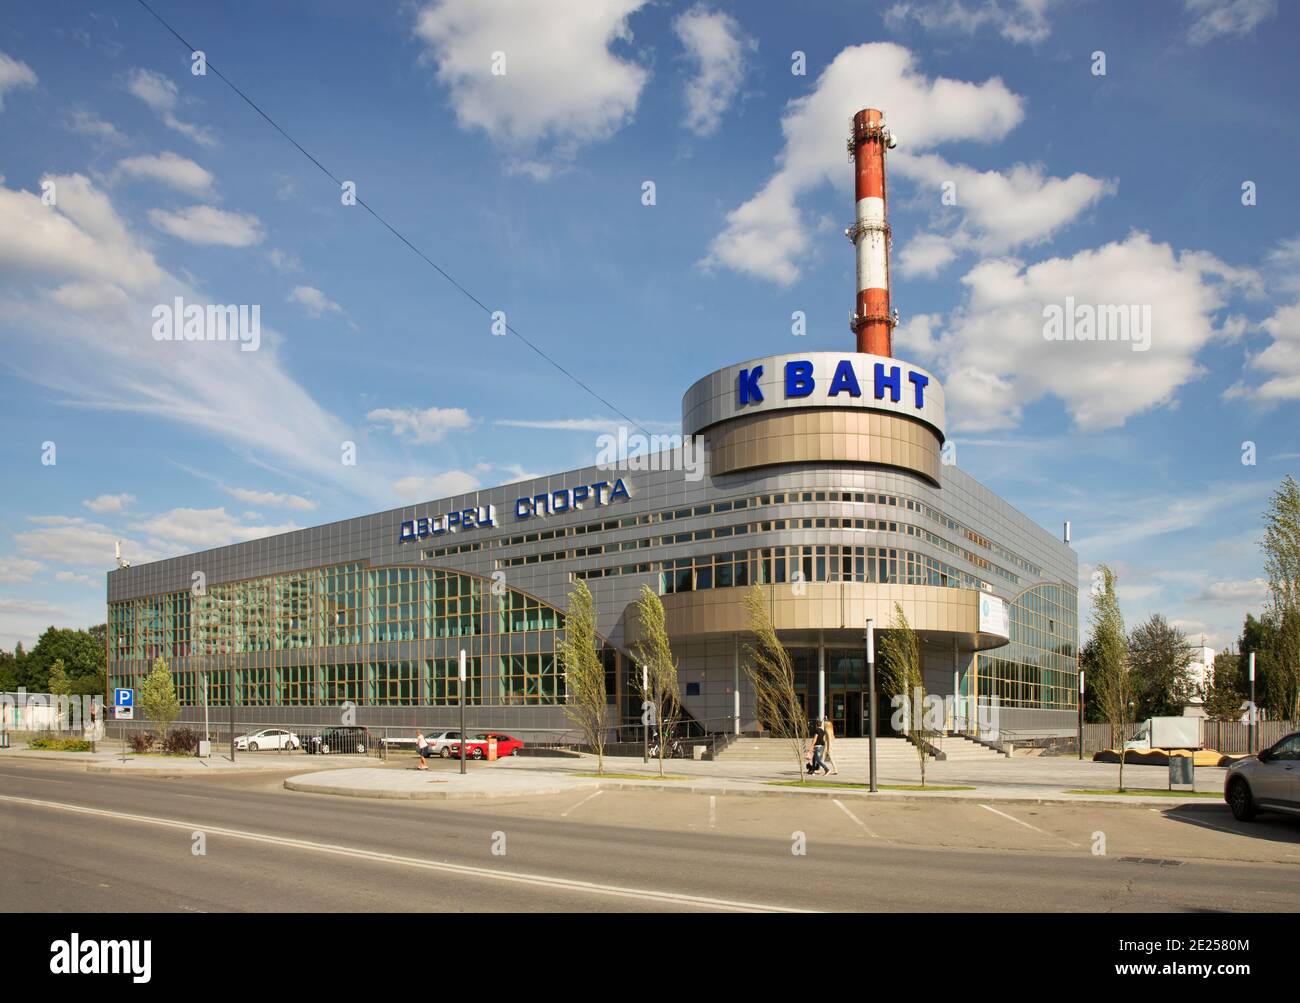 Kvant - Sportpalast in Troizk Stadt. Troizki verwaltungsbezirk von Moskau. Russland Stockfoto